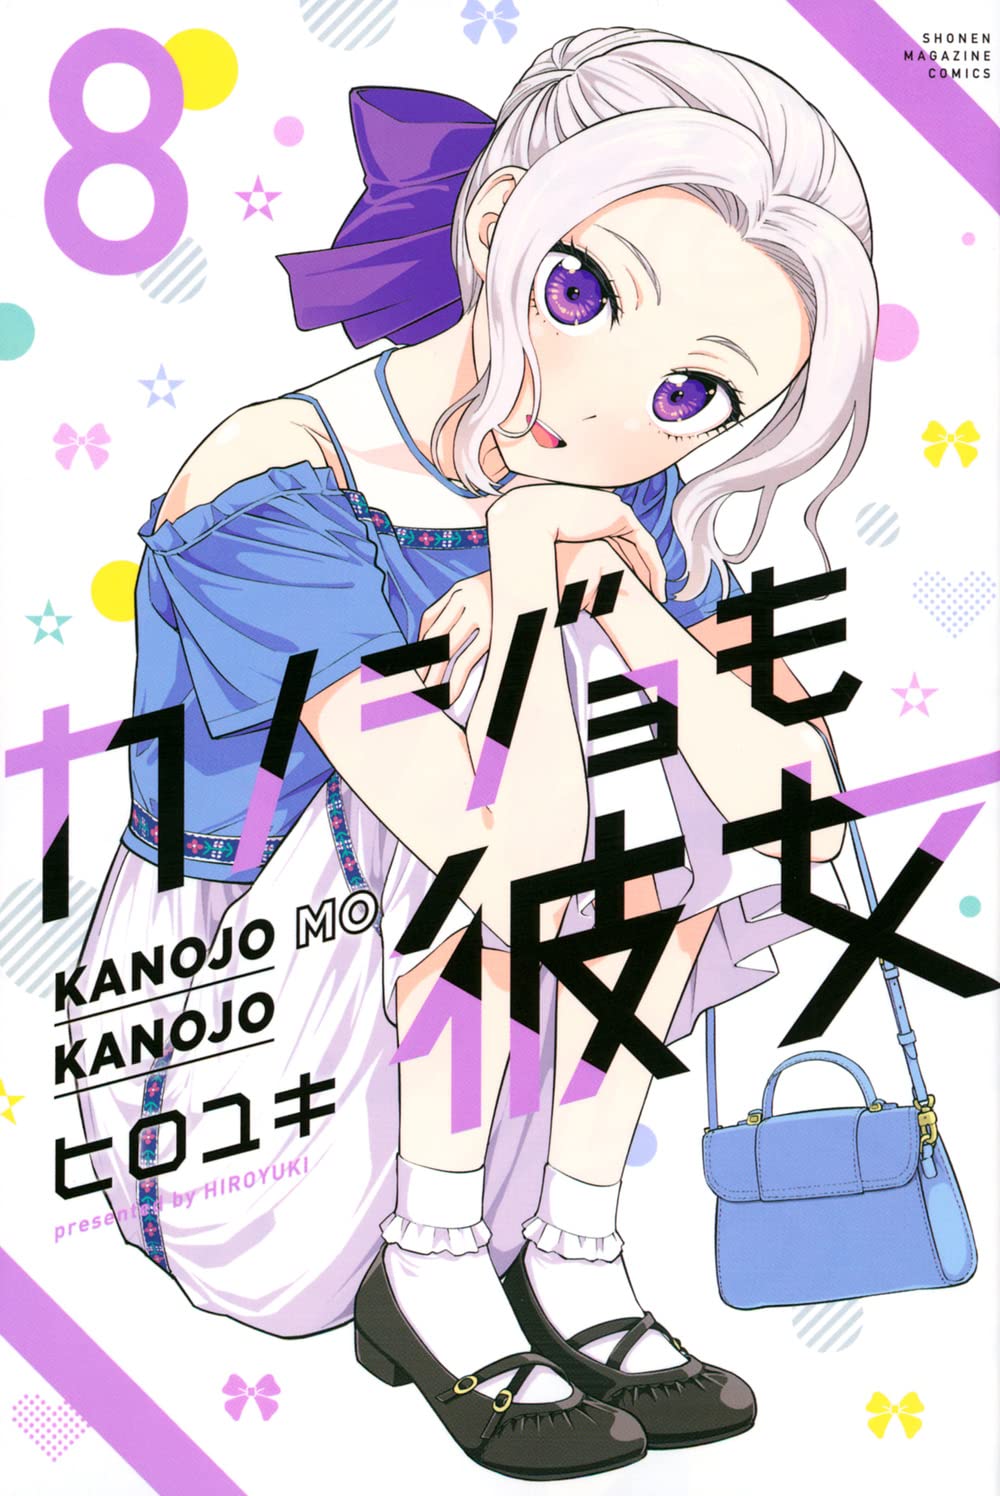 Honzuki no Gekokujou: Volume 26 da light novel chega as lojas japonesas.  Terceira temporada do anime deve apresentar atualizações em breve.